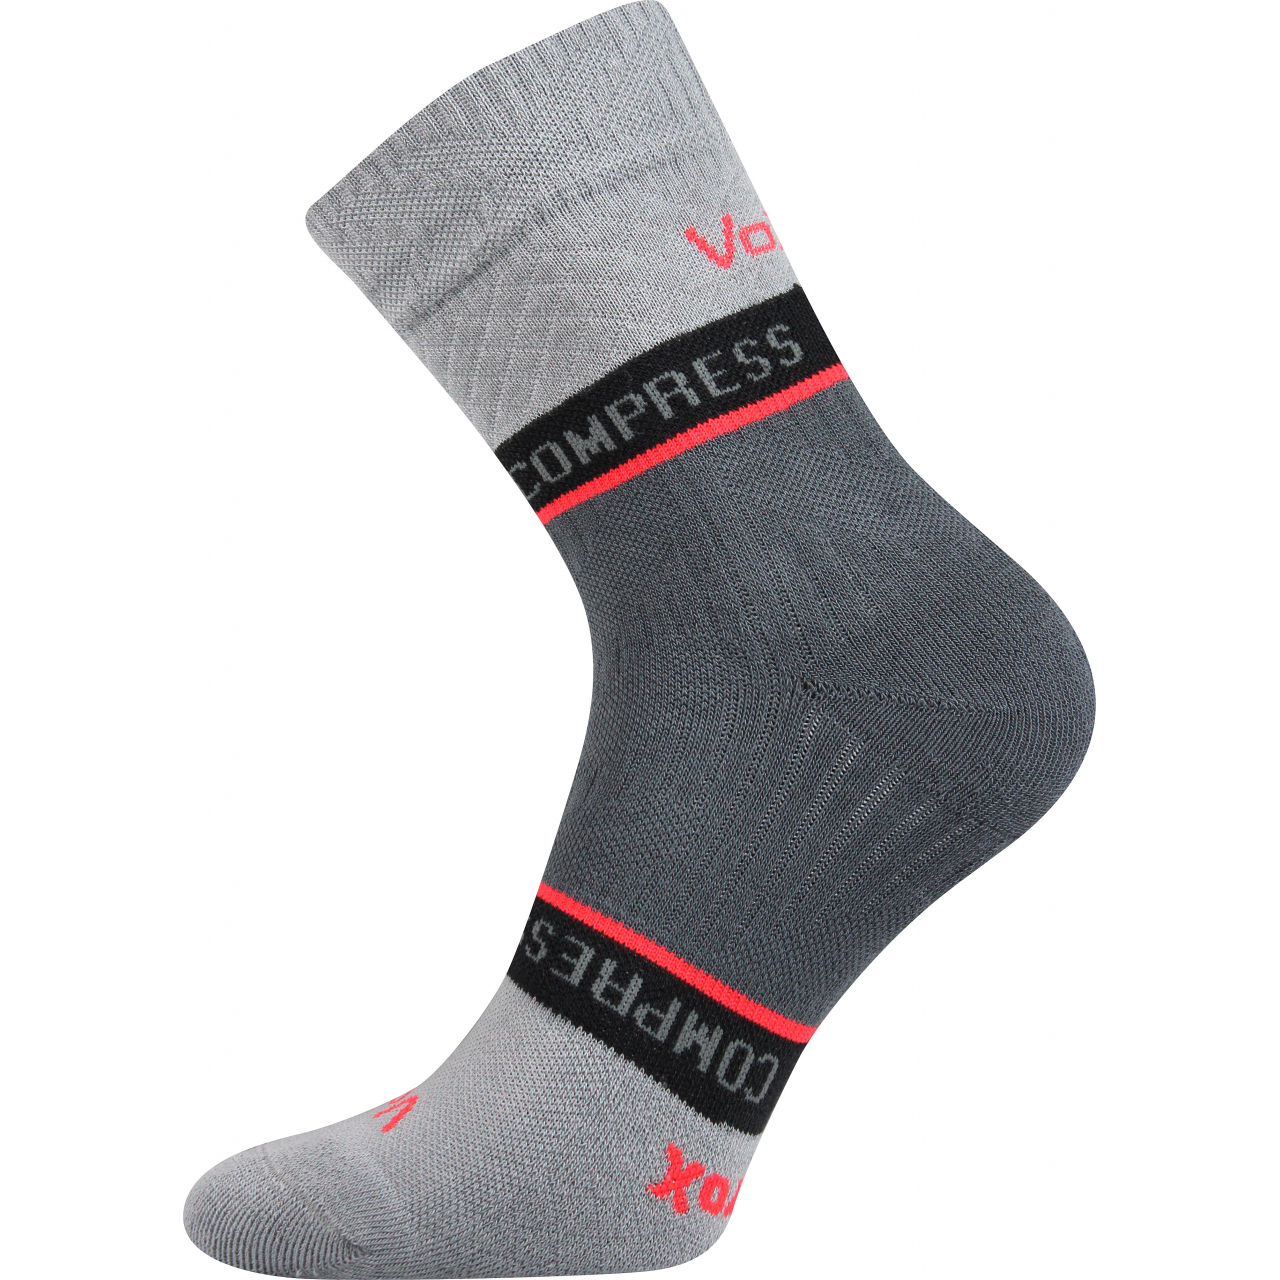 Ponožky kompresní Voxx Fixan - světle šedé, 43-46